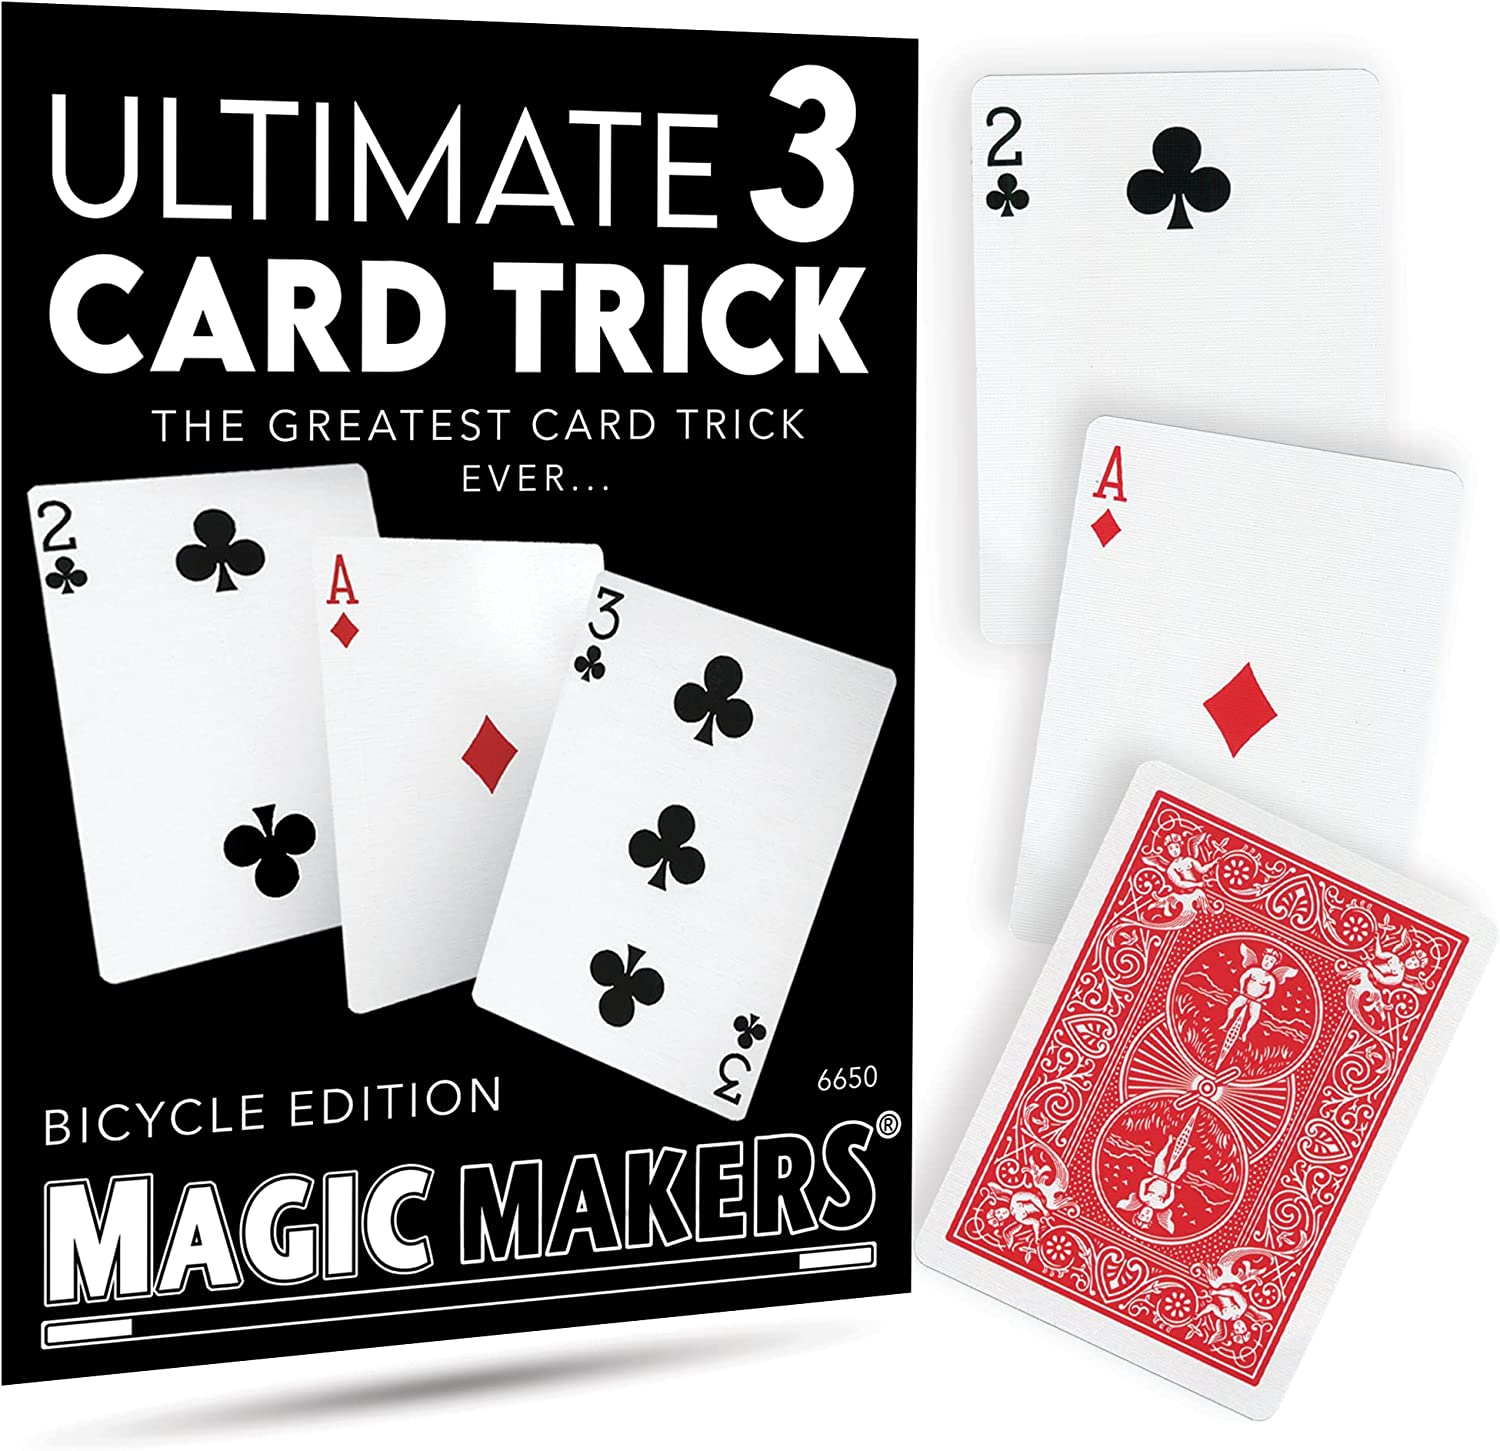 Maker Magic: The Card Machine Trick - Make